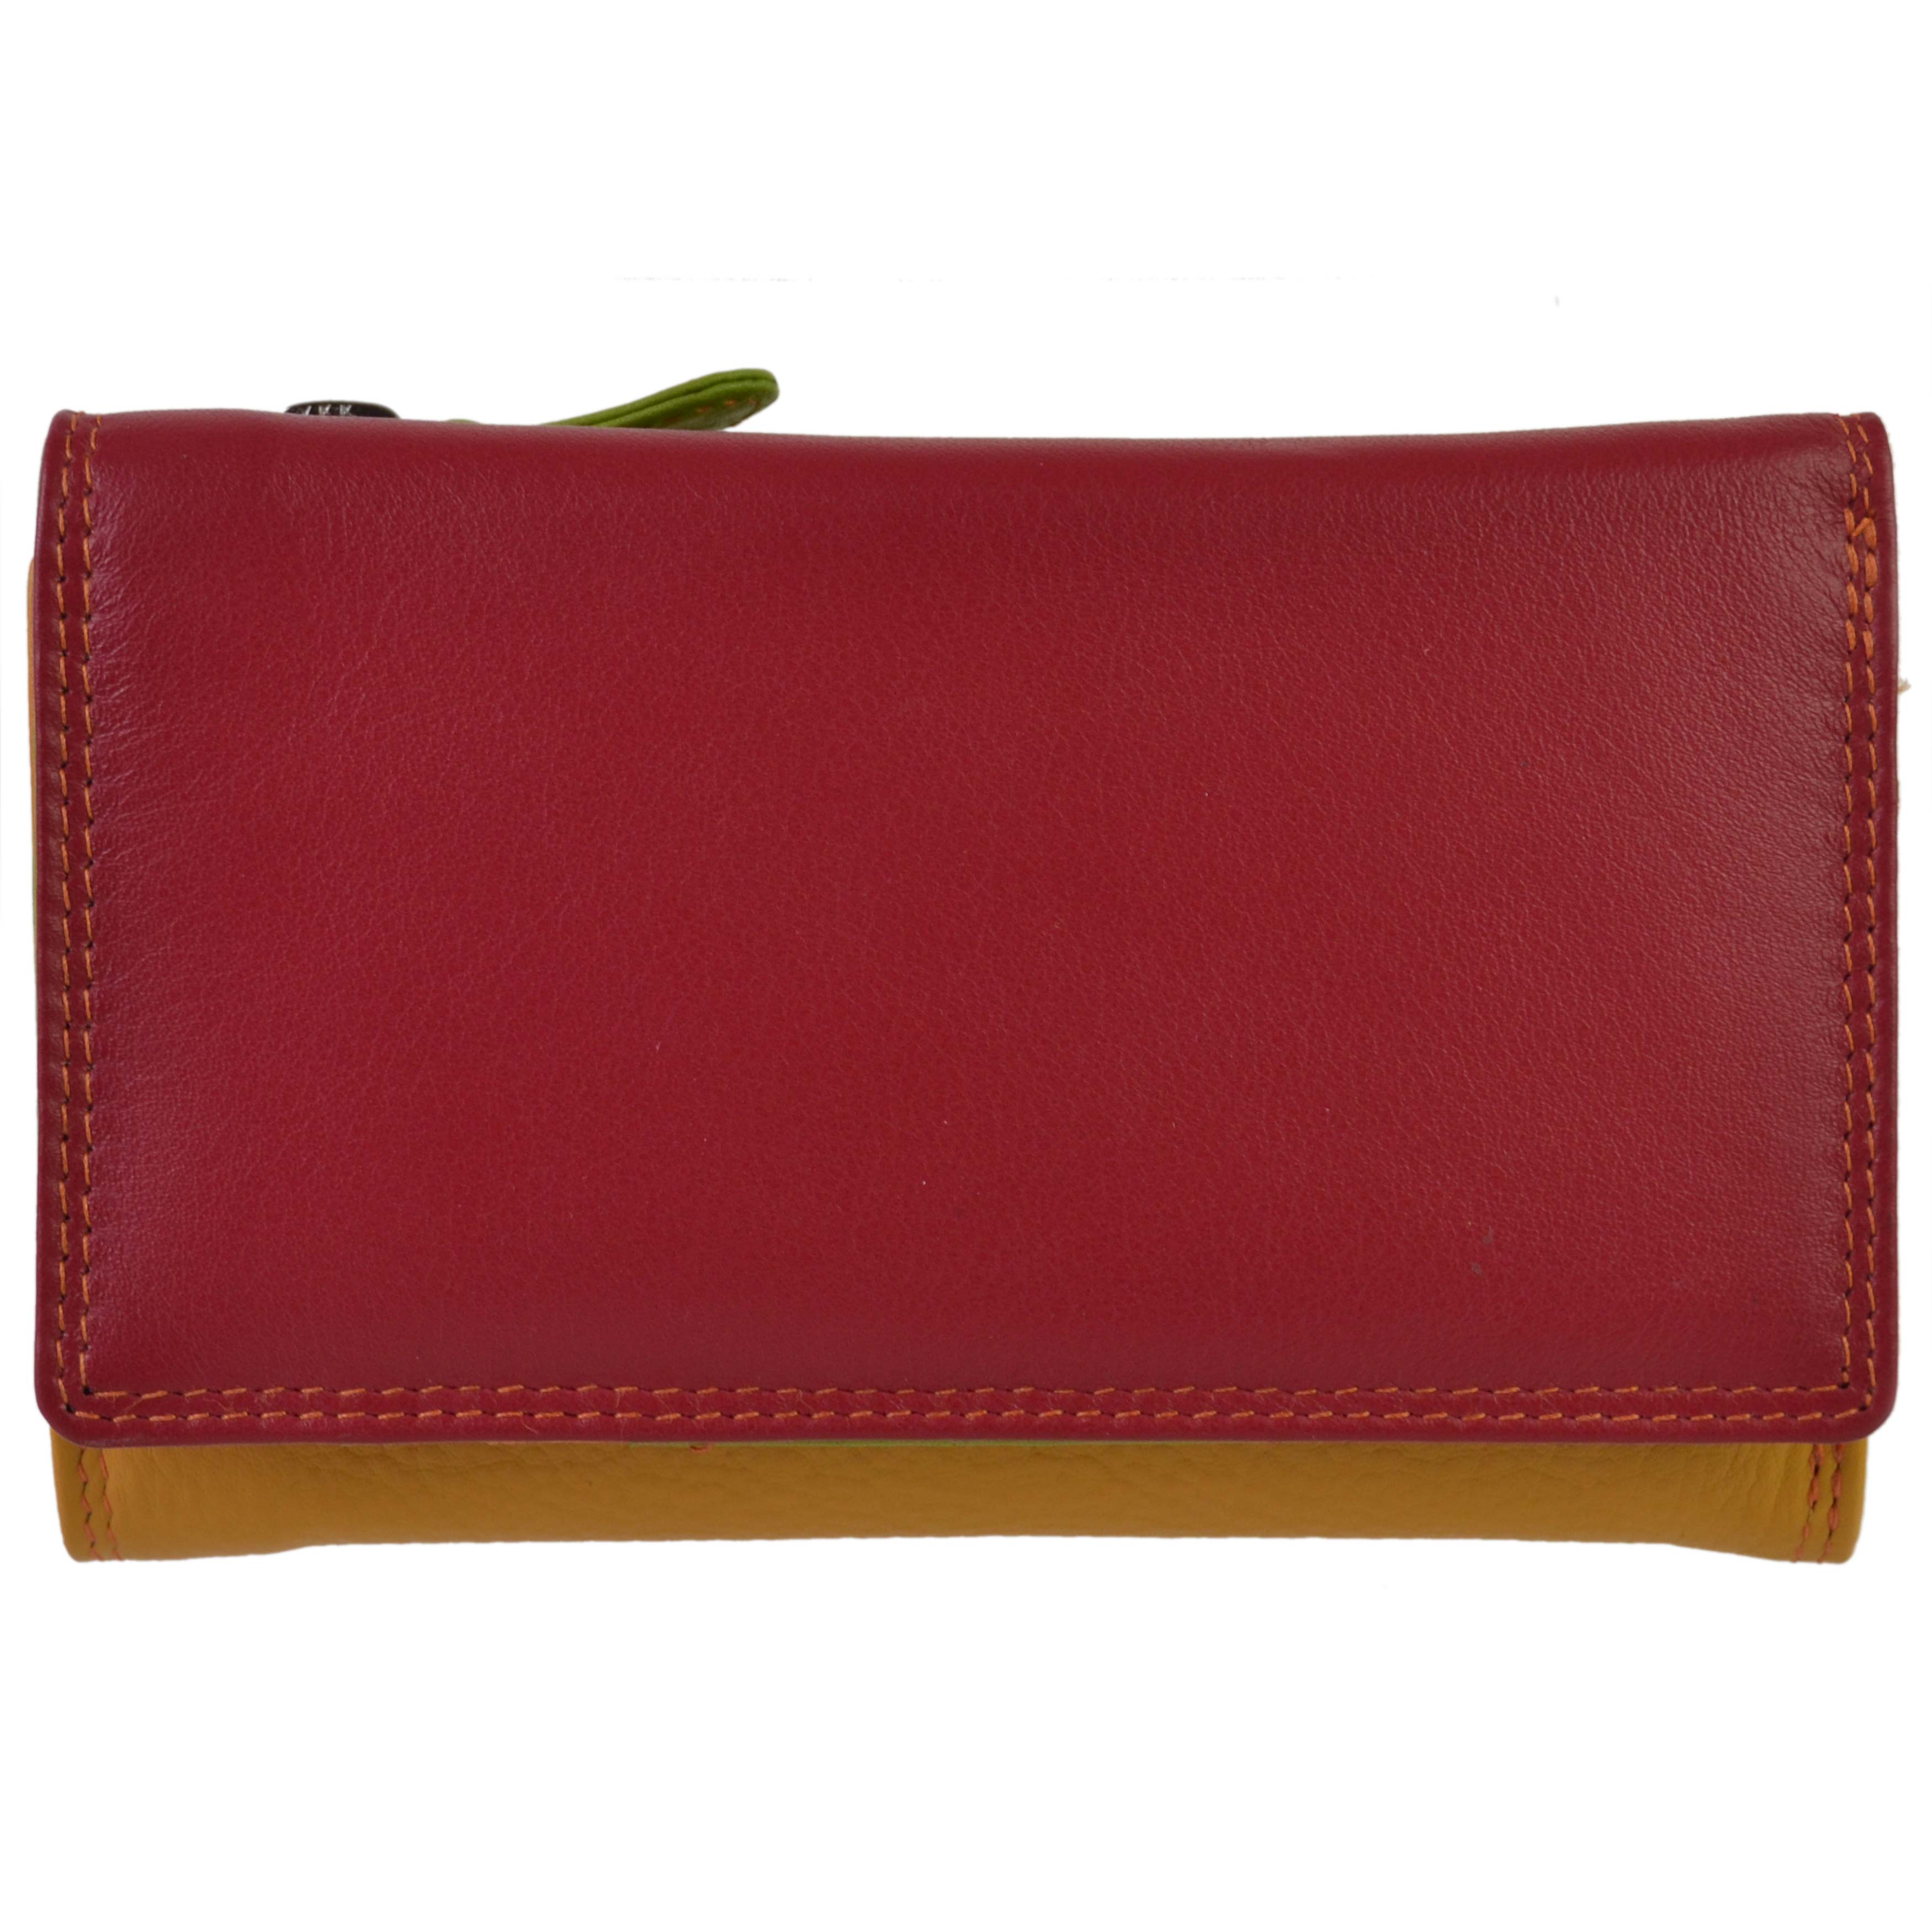 Golunski 7-116 Leather Multi Coloured Ladies stylish RFID Purse Wallet.